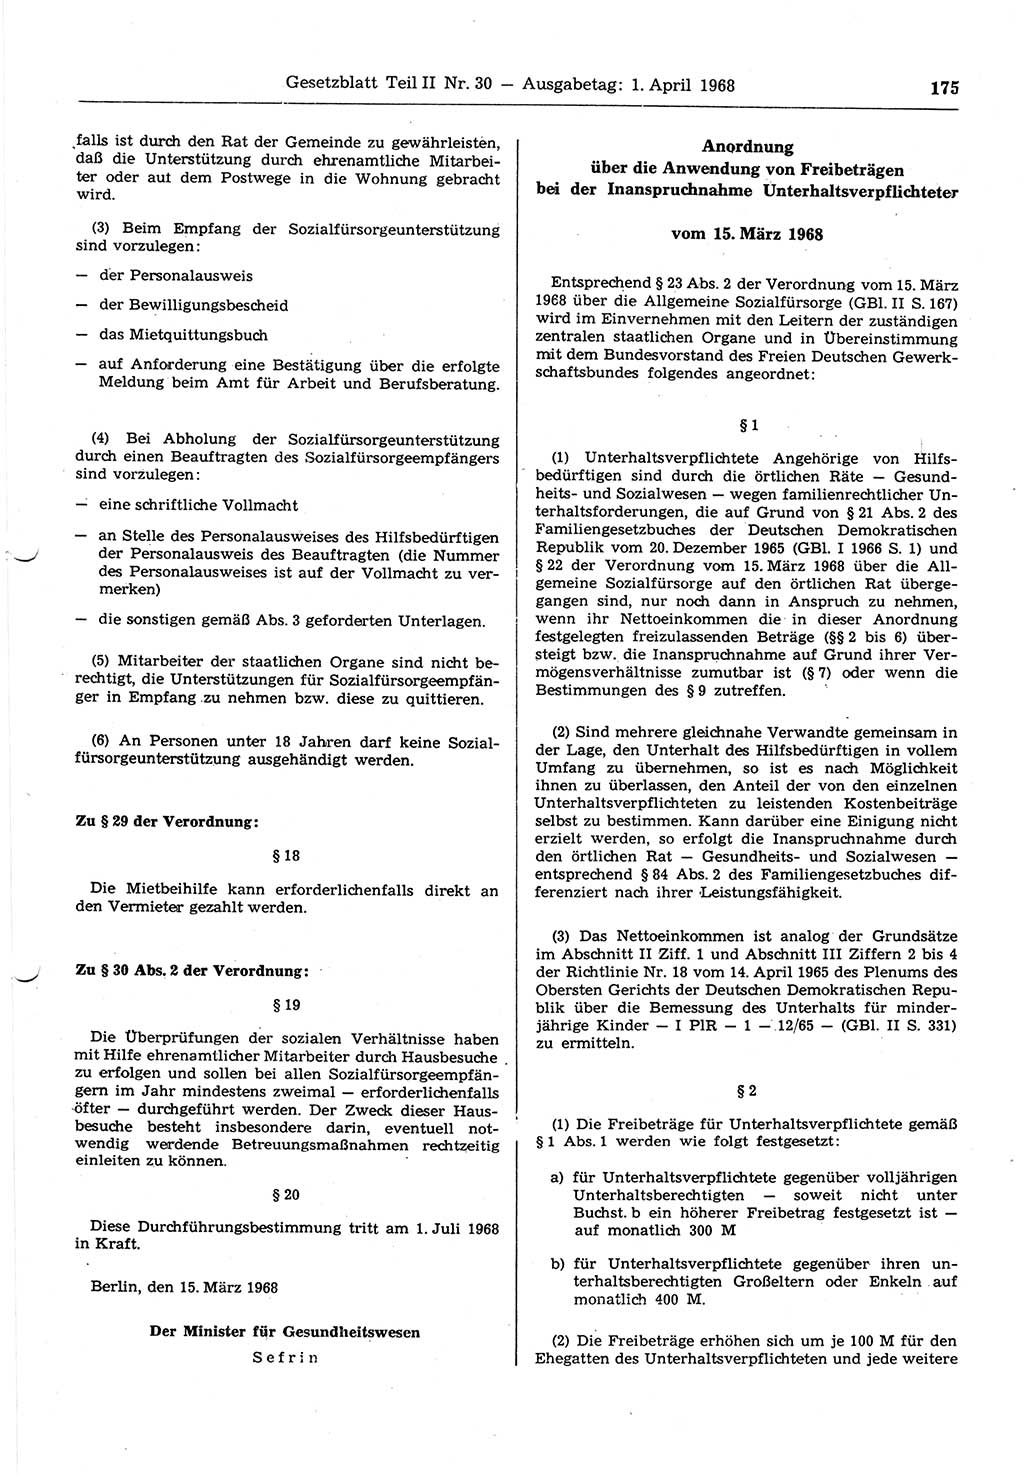 Gesetzblatt (GBl.) der Deutschen Demokratischen Republik (DDR) Teil ⅠⅠ 1968, Seite 175 (GBl. DDR ⅠⅠ 1968, S. 175)